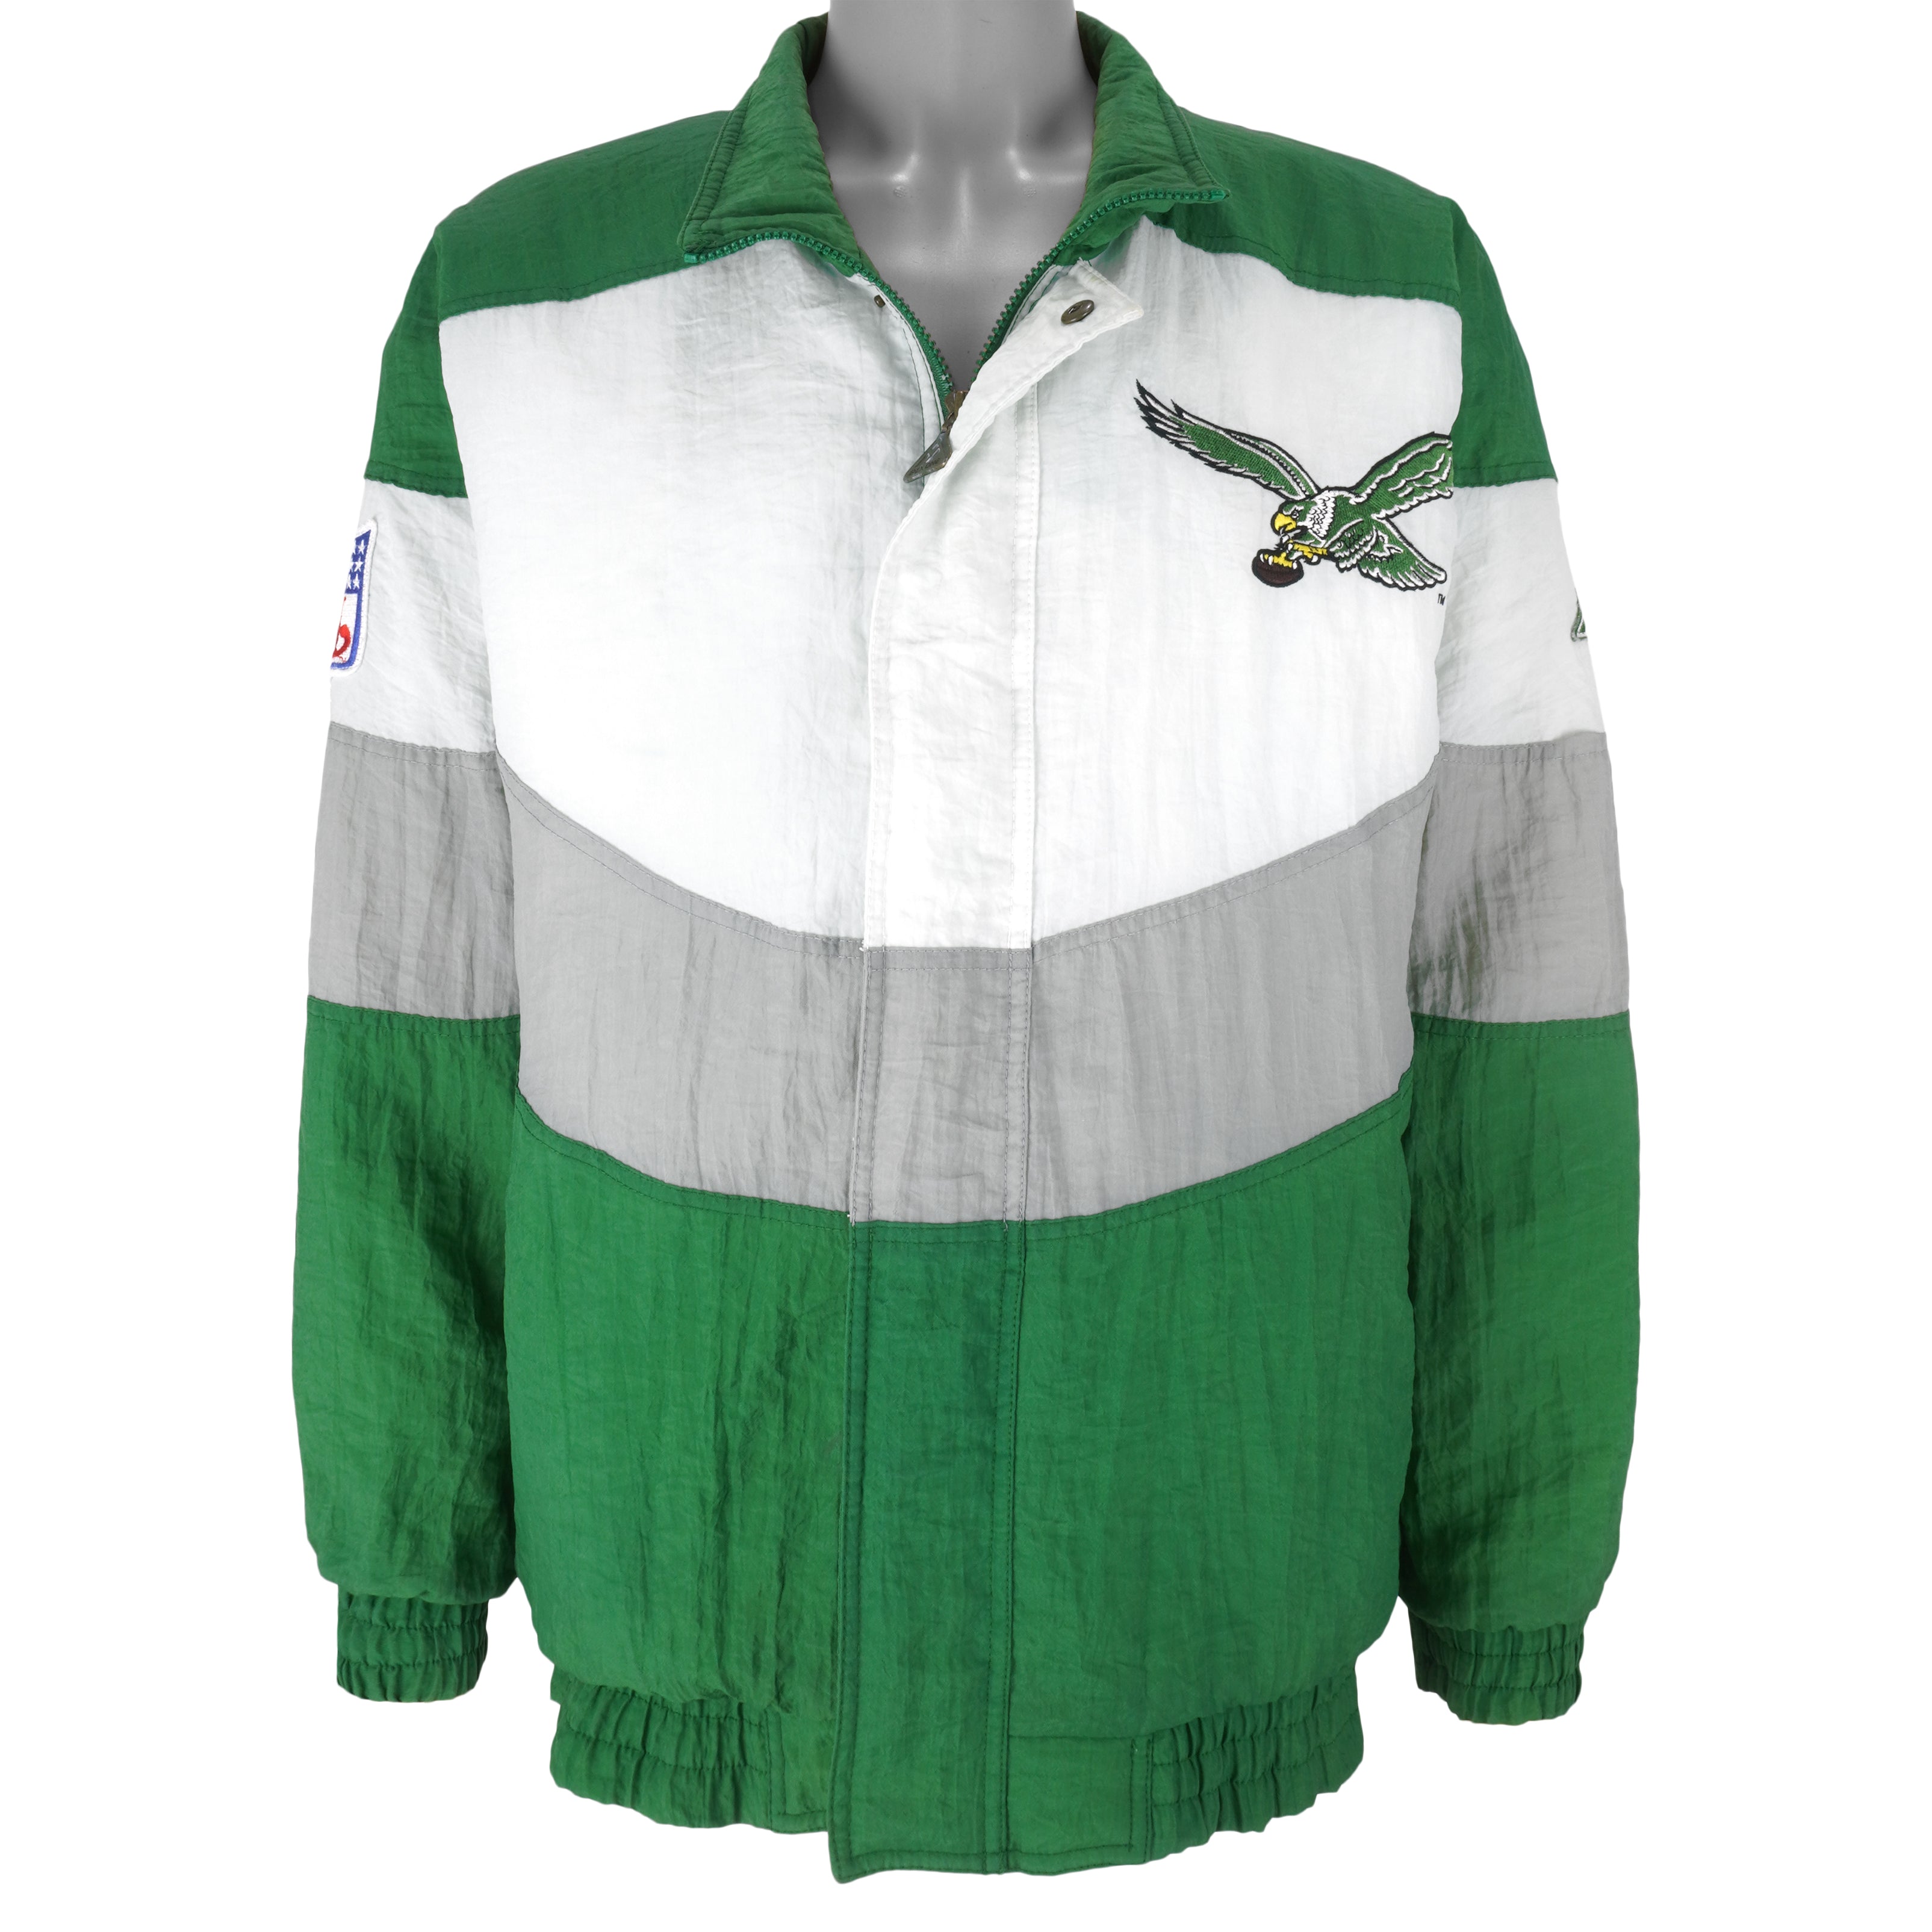 Vintage 90s Philadelphia Eagles Apex One Jacket 